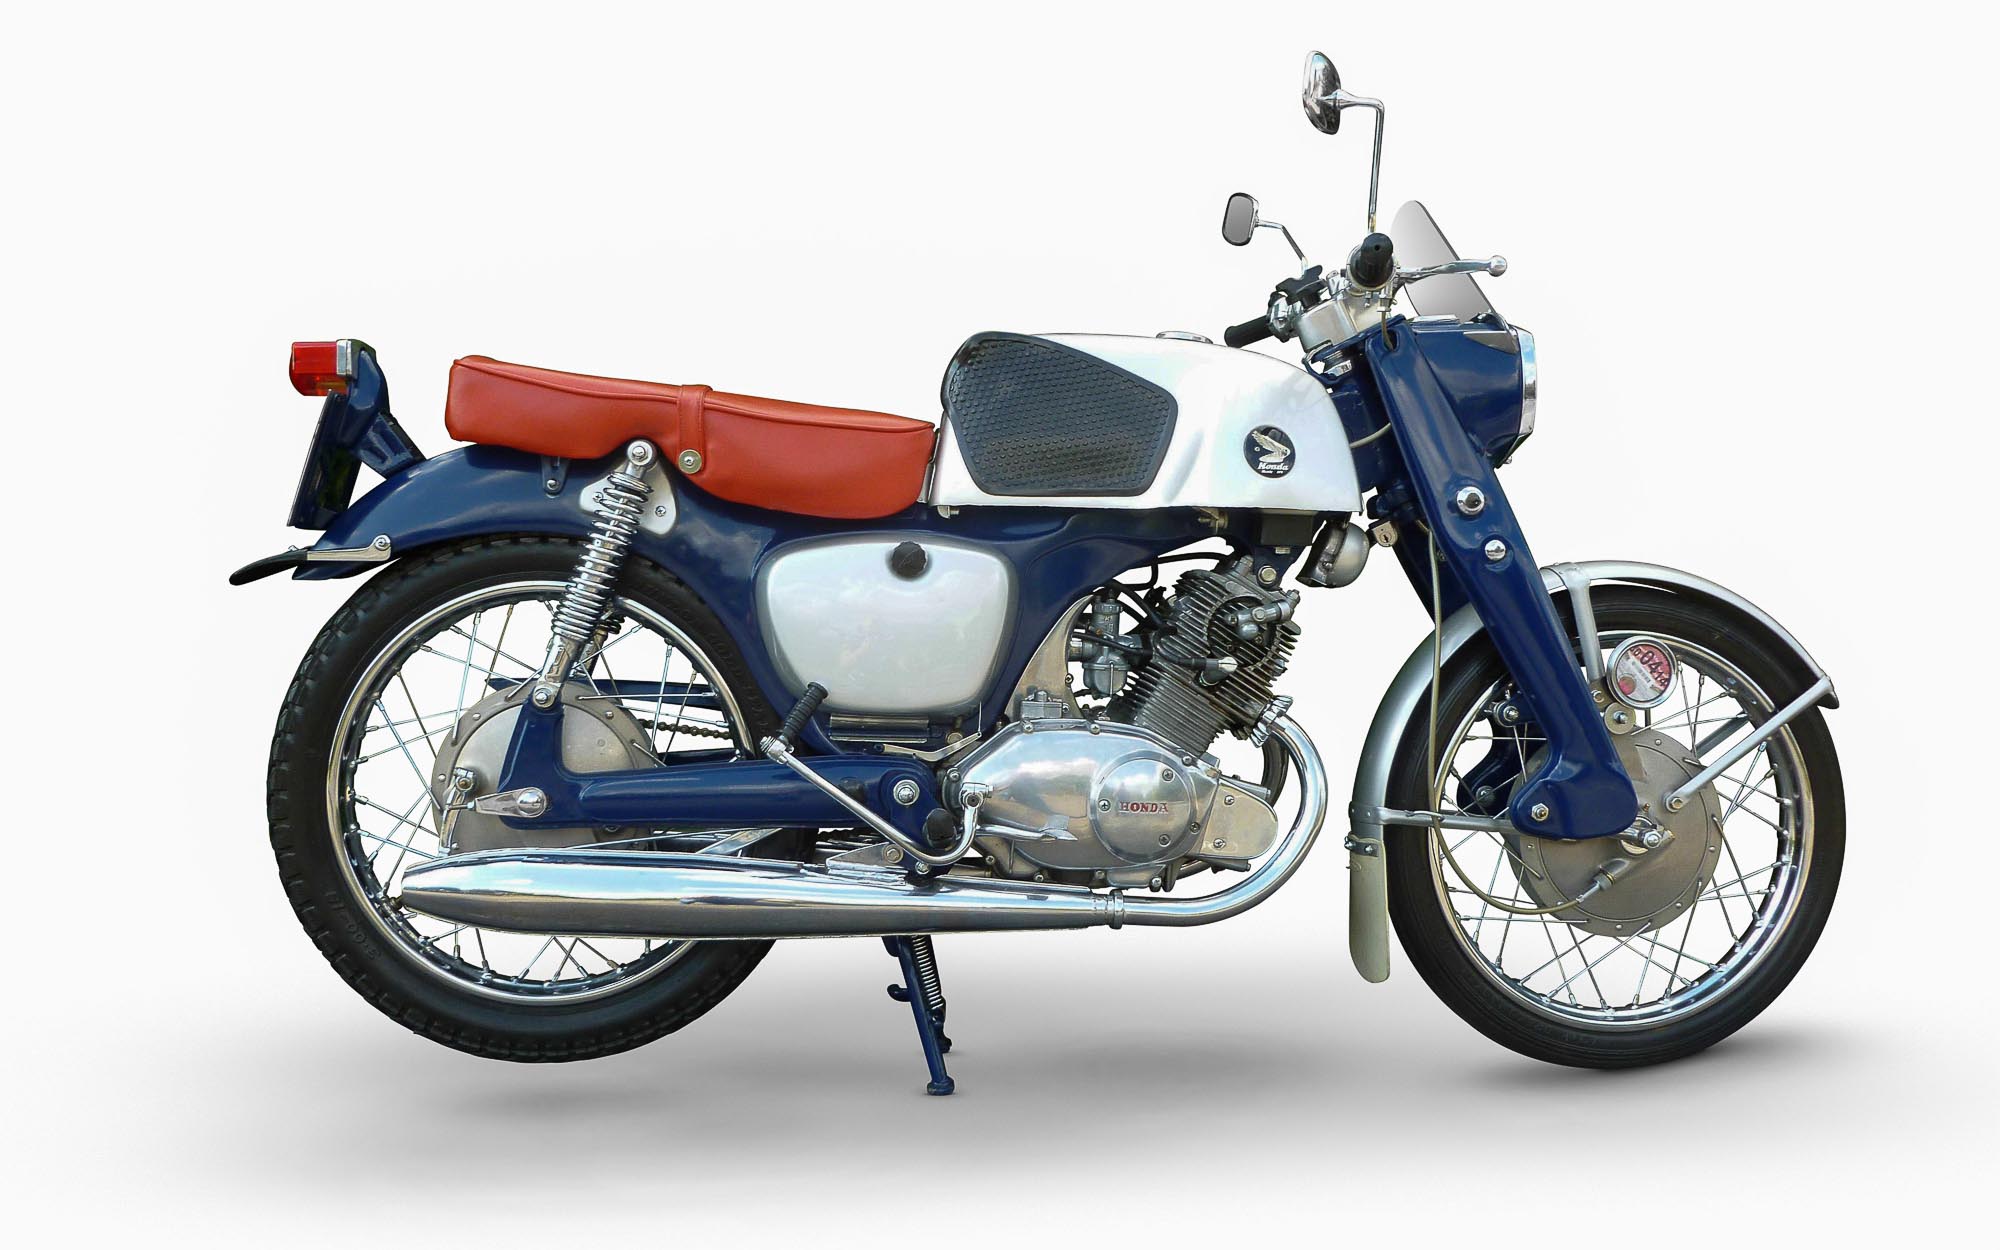 Honda CB 92